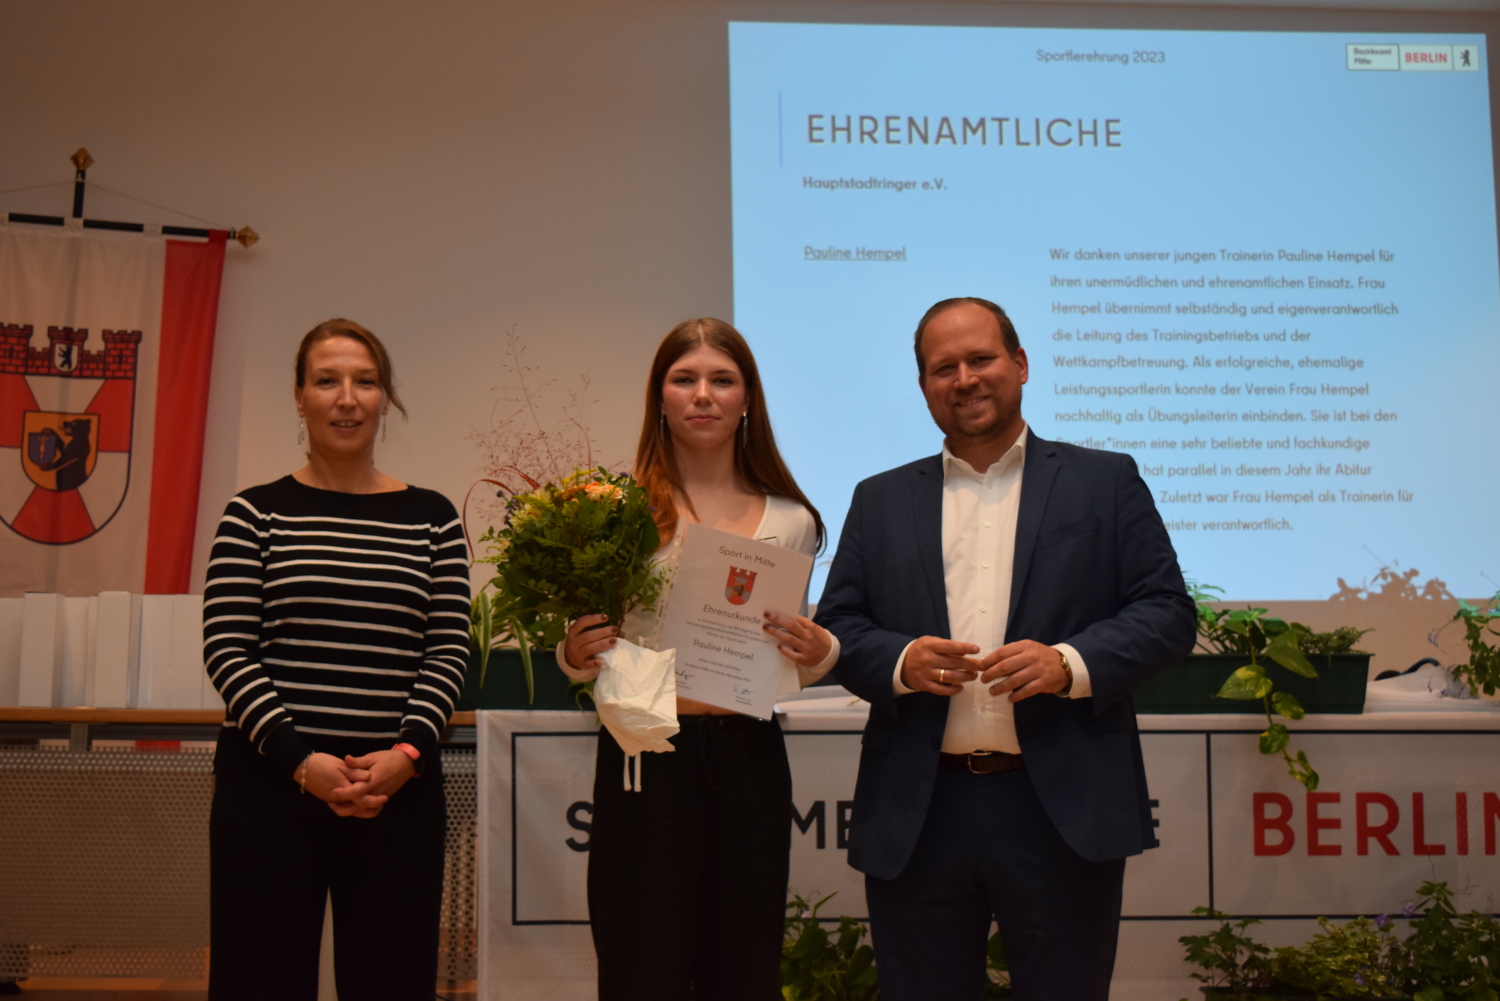 Für ihr Engagement als Trainerin und im Verein Hauptstadtringer e.V. erhielt Pauline Hempel die Auszeichnung in der Kategorie Ehrenamt.